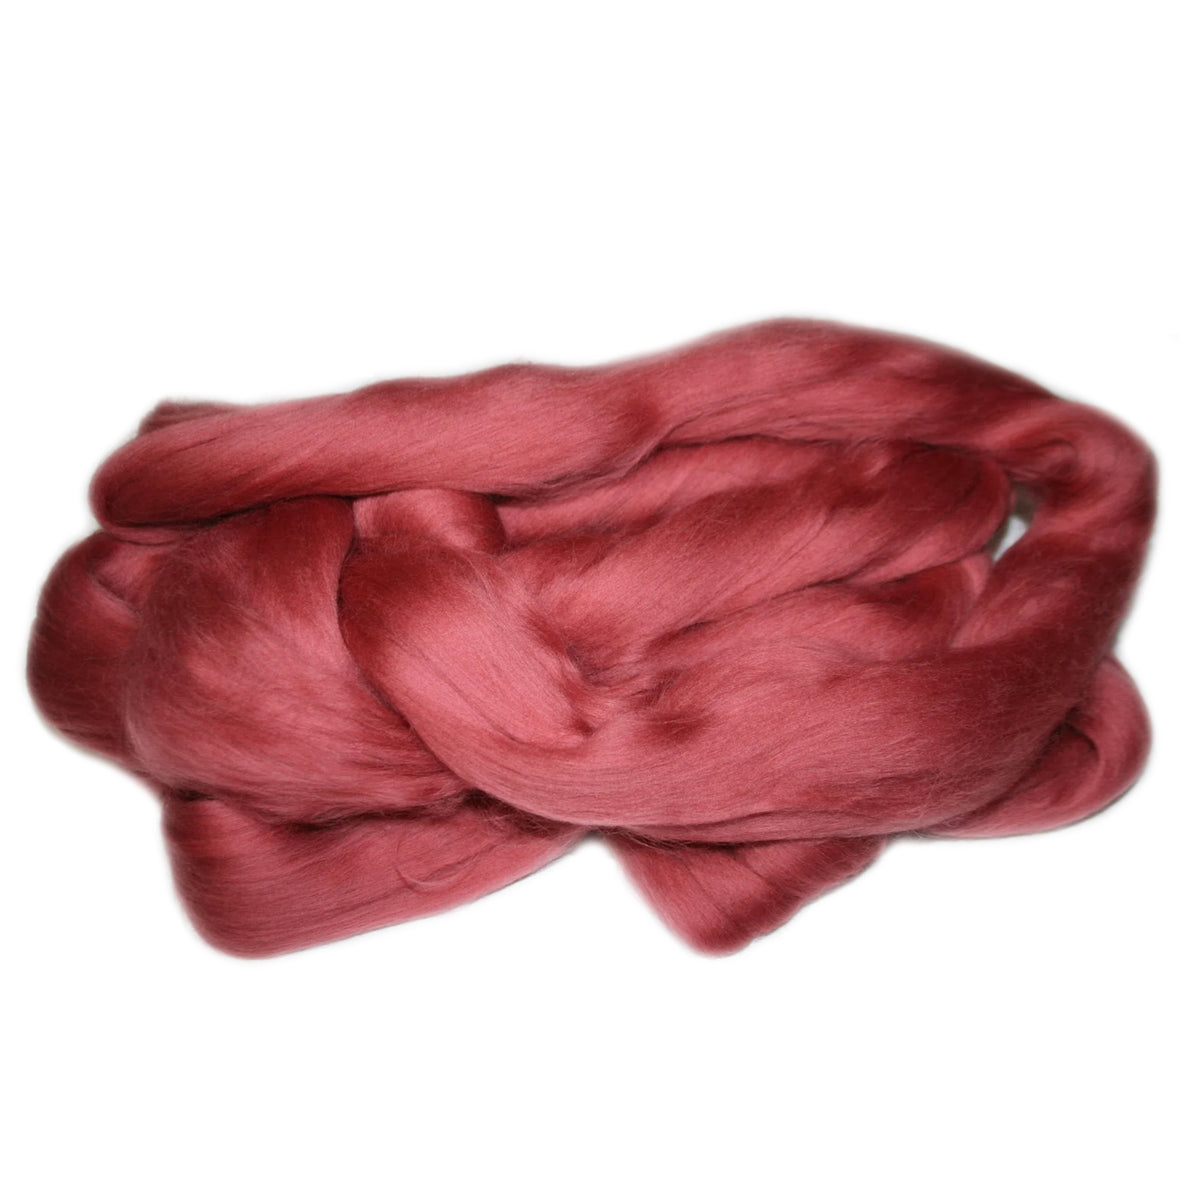 Merino Wool Top Rhubarb 2950g